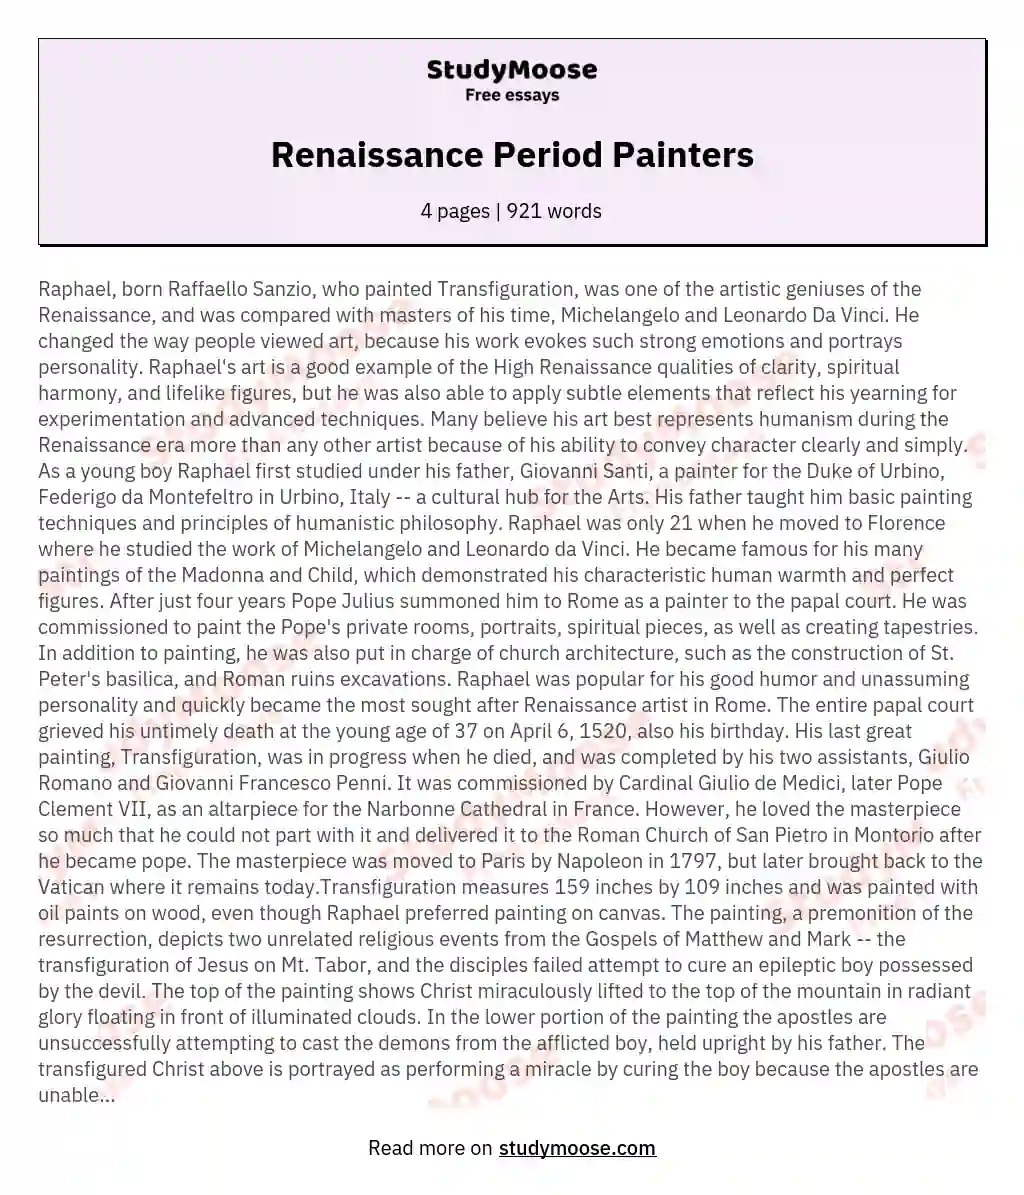 Renaissance Period Painters essay